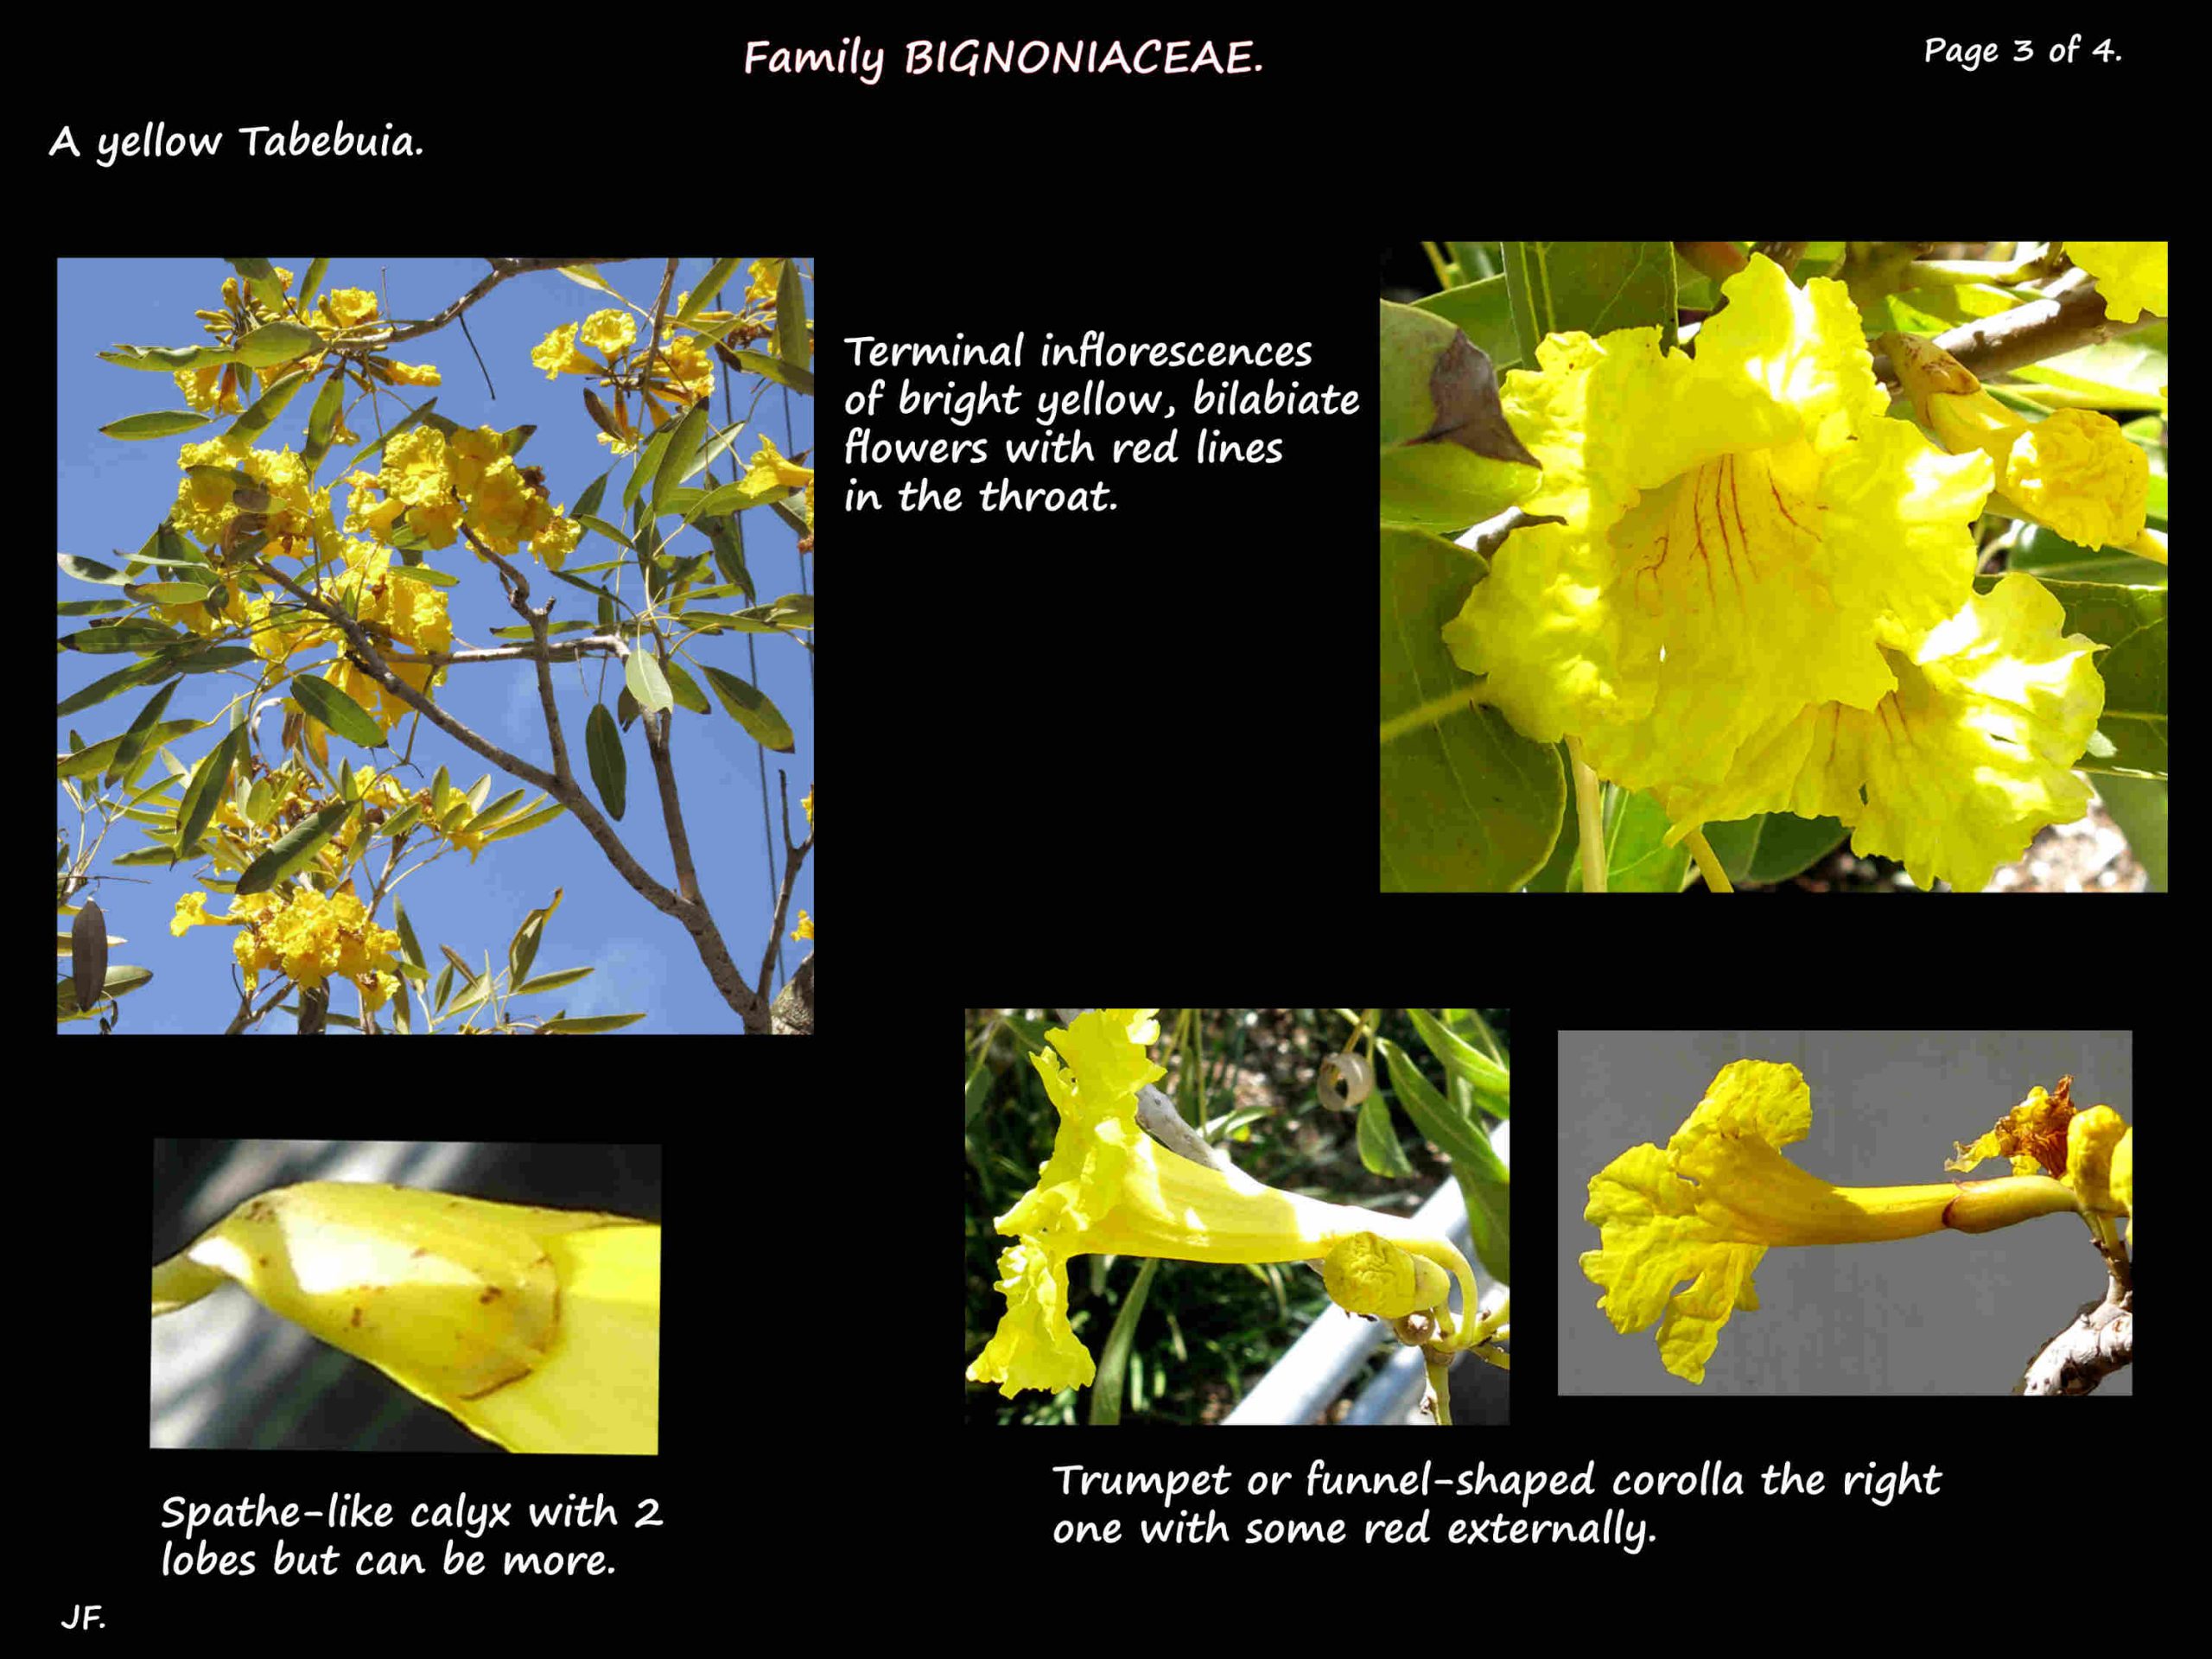 3 Yellow Tabebuia flowers